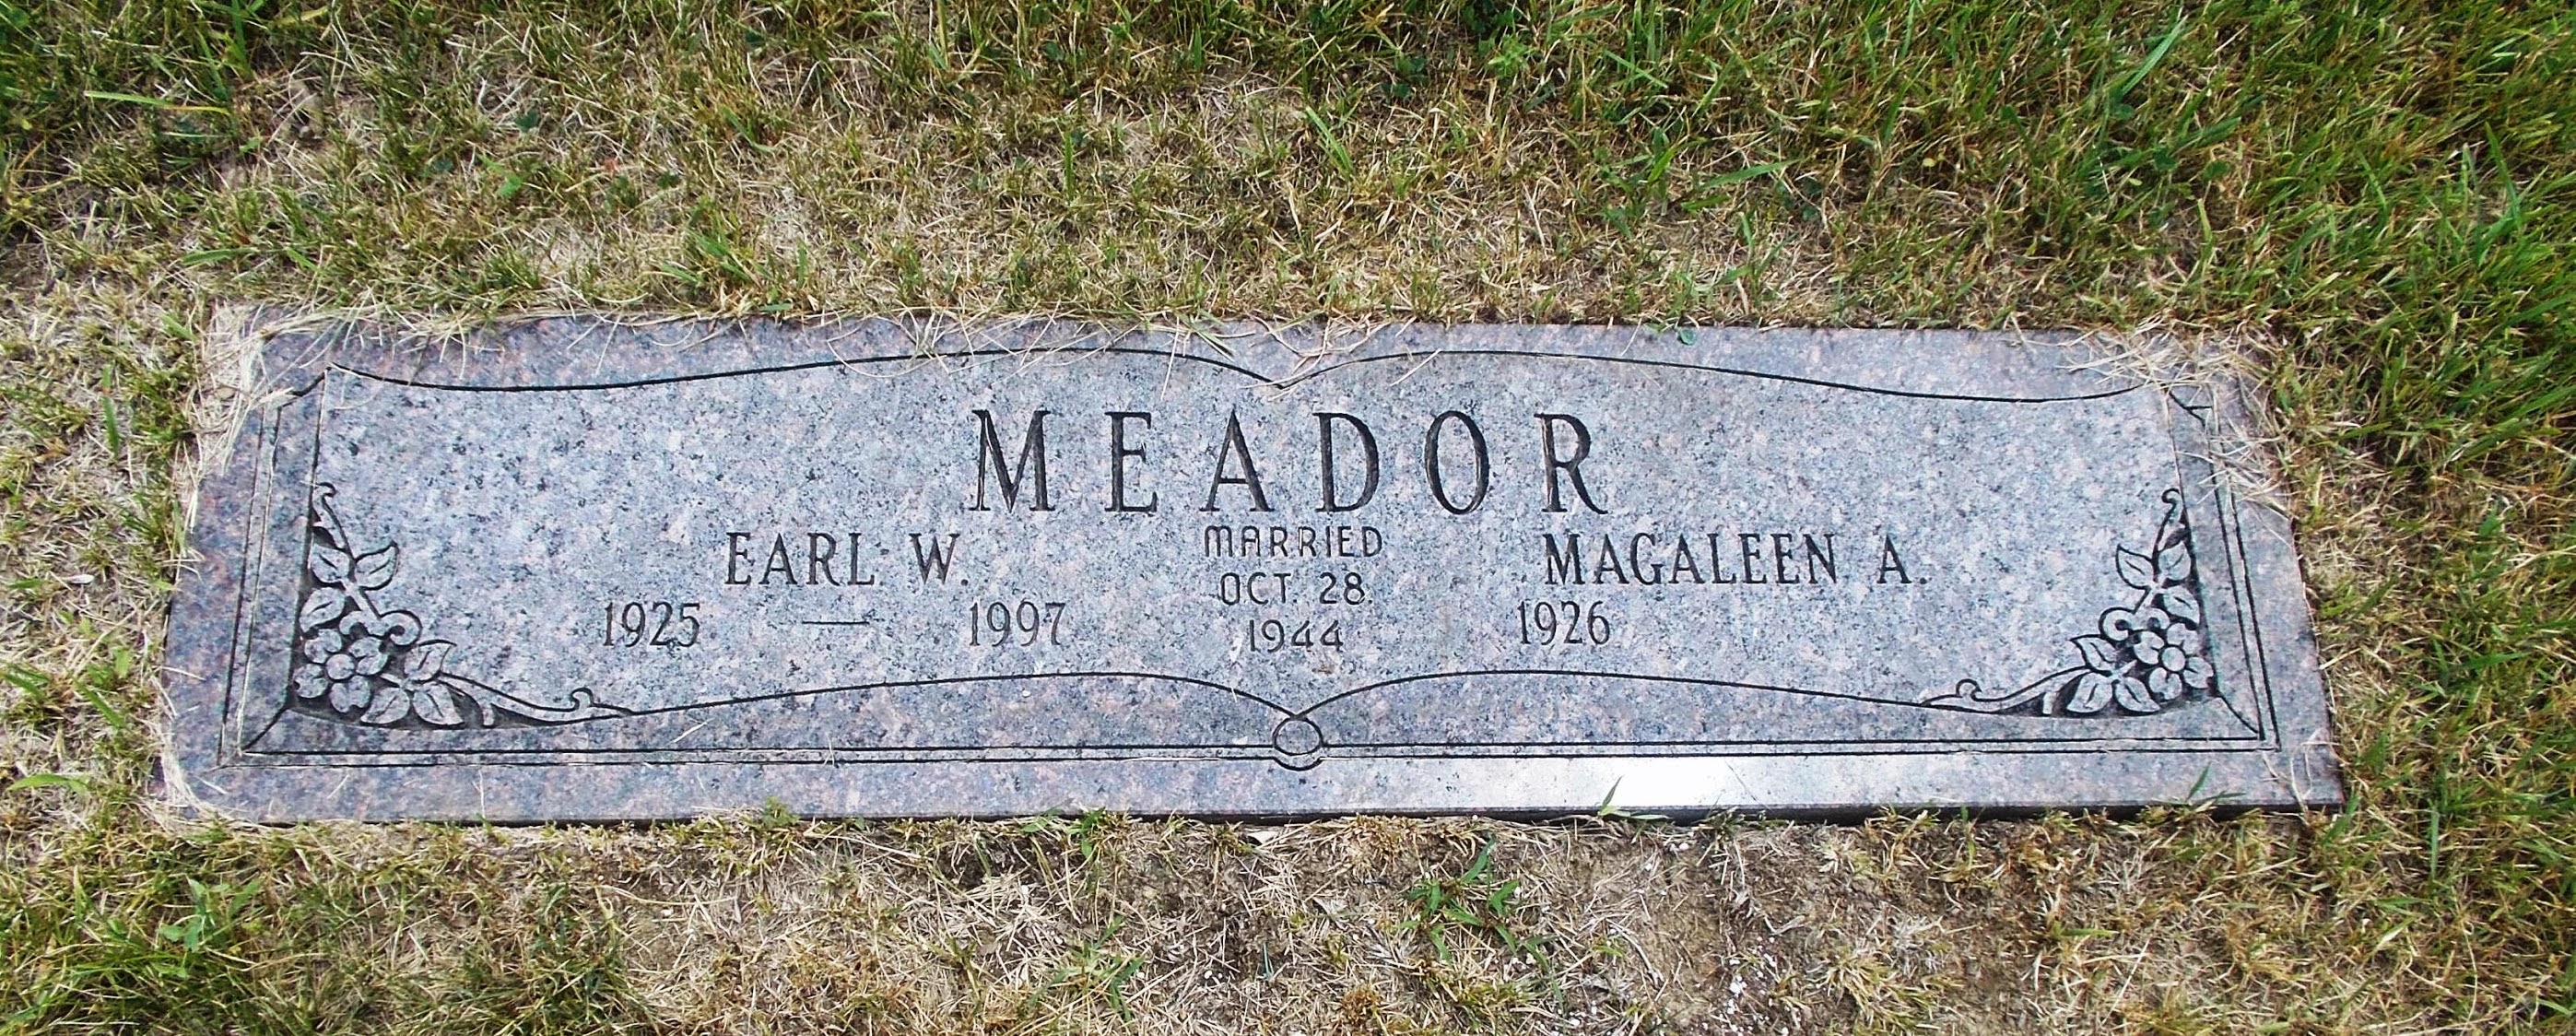 Earl W Meador